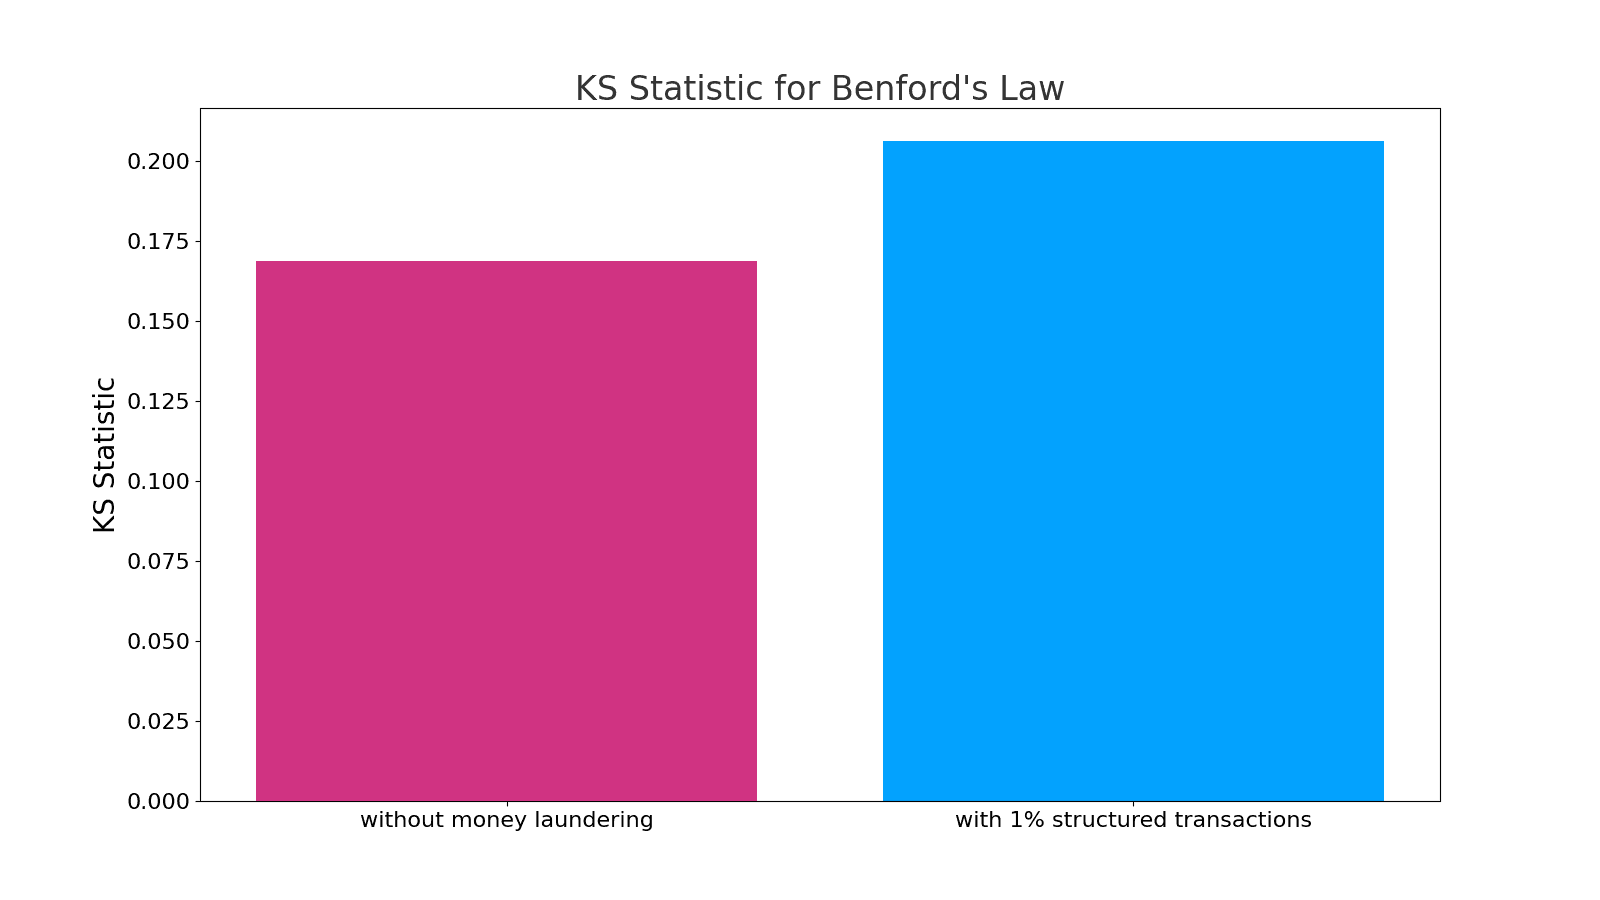 Kolmogorov-Smirnov (KS) Statistic for both scenarios.